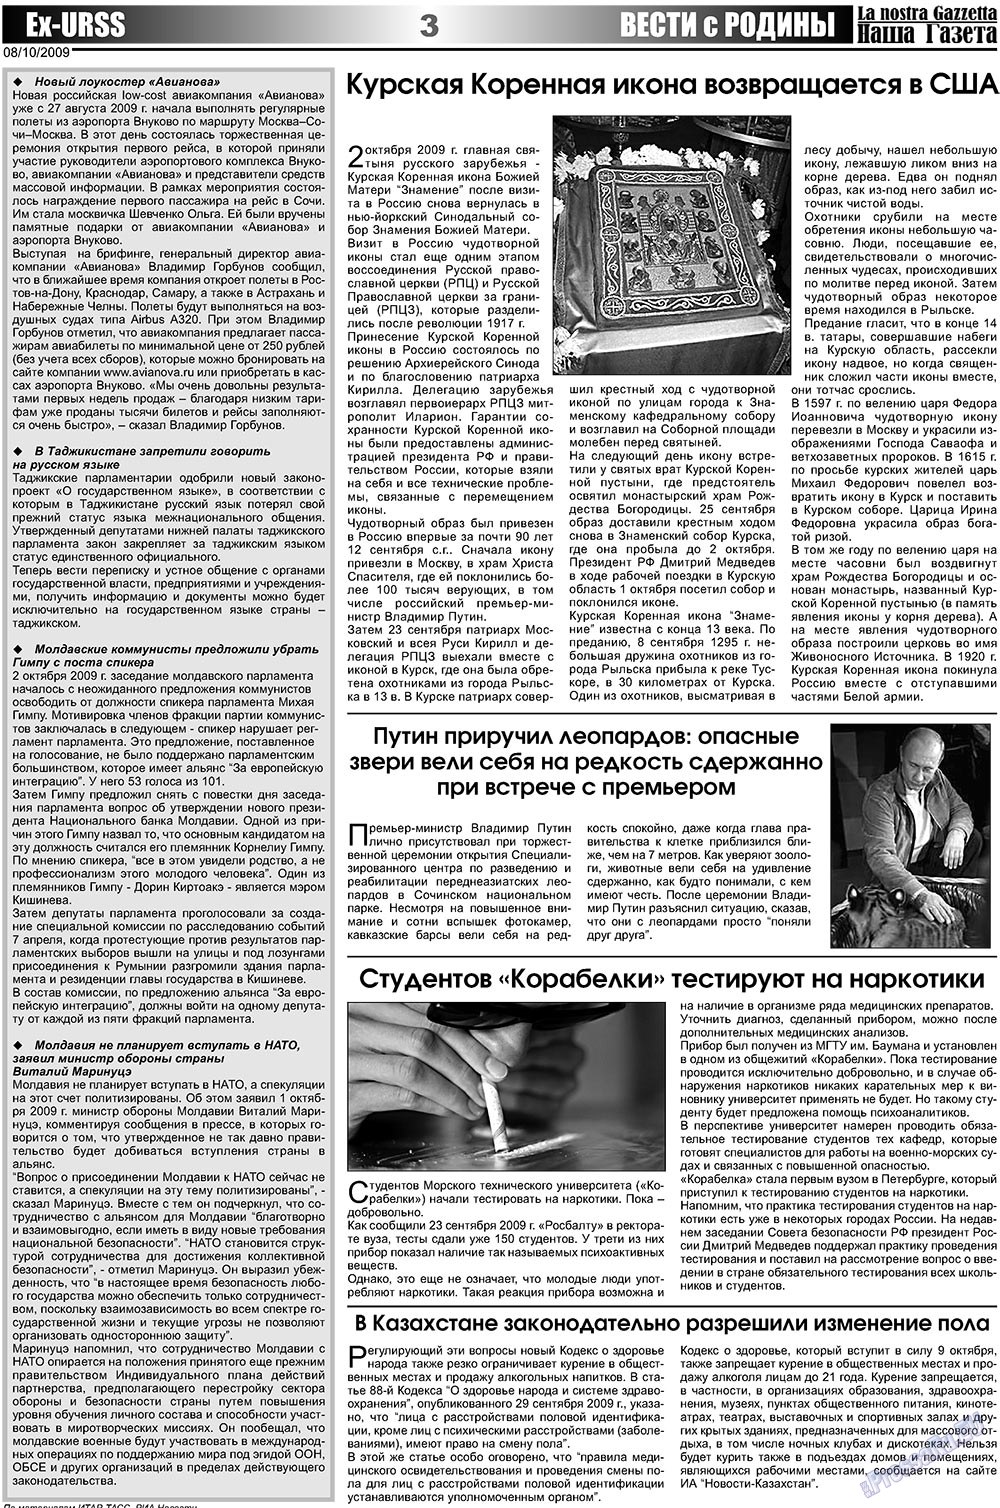 Наша Газета Италия, газета. 2009 №19 стр.3